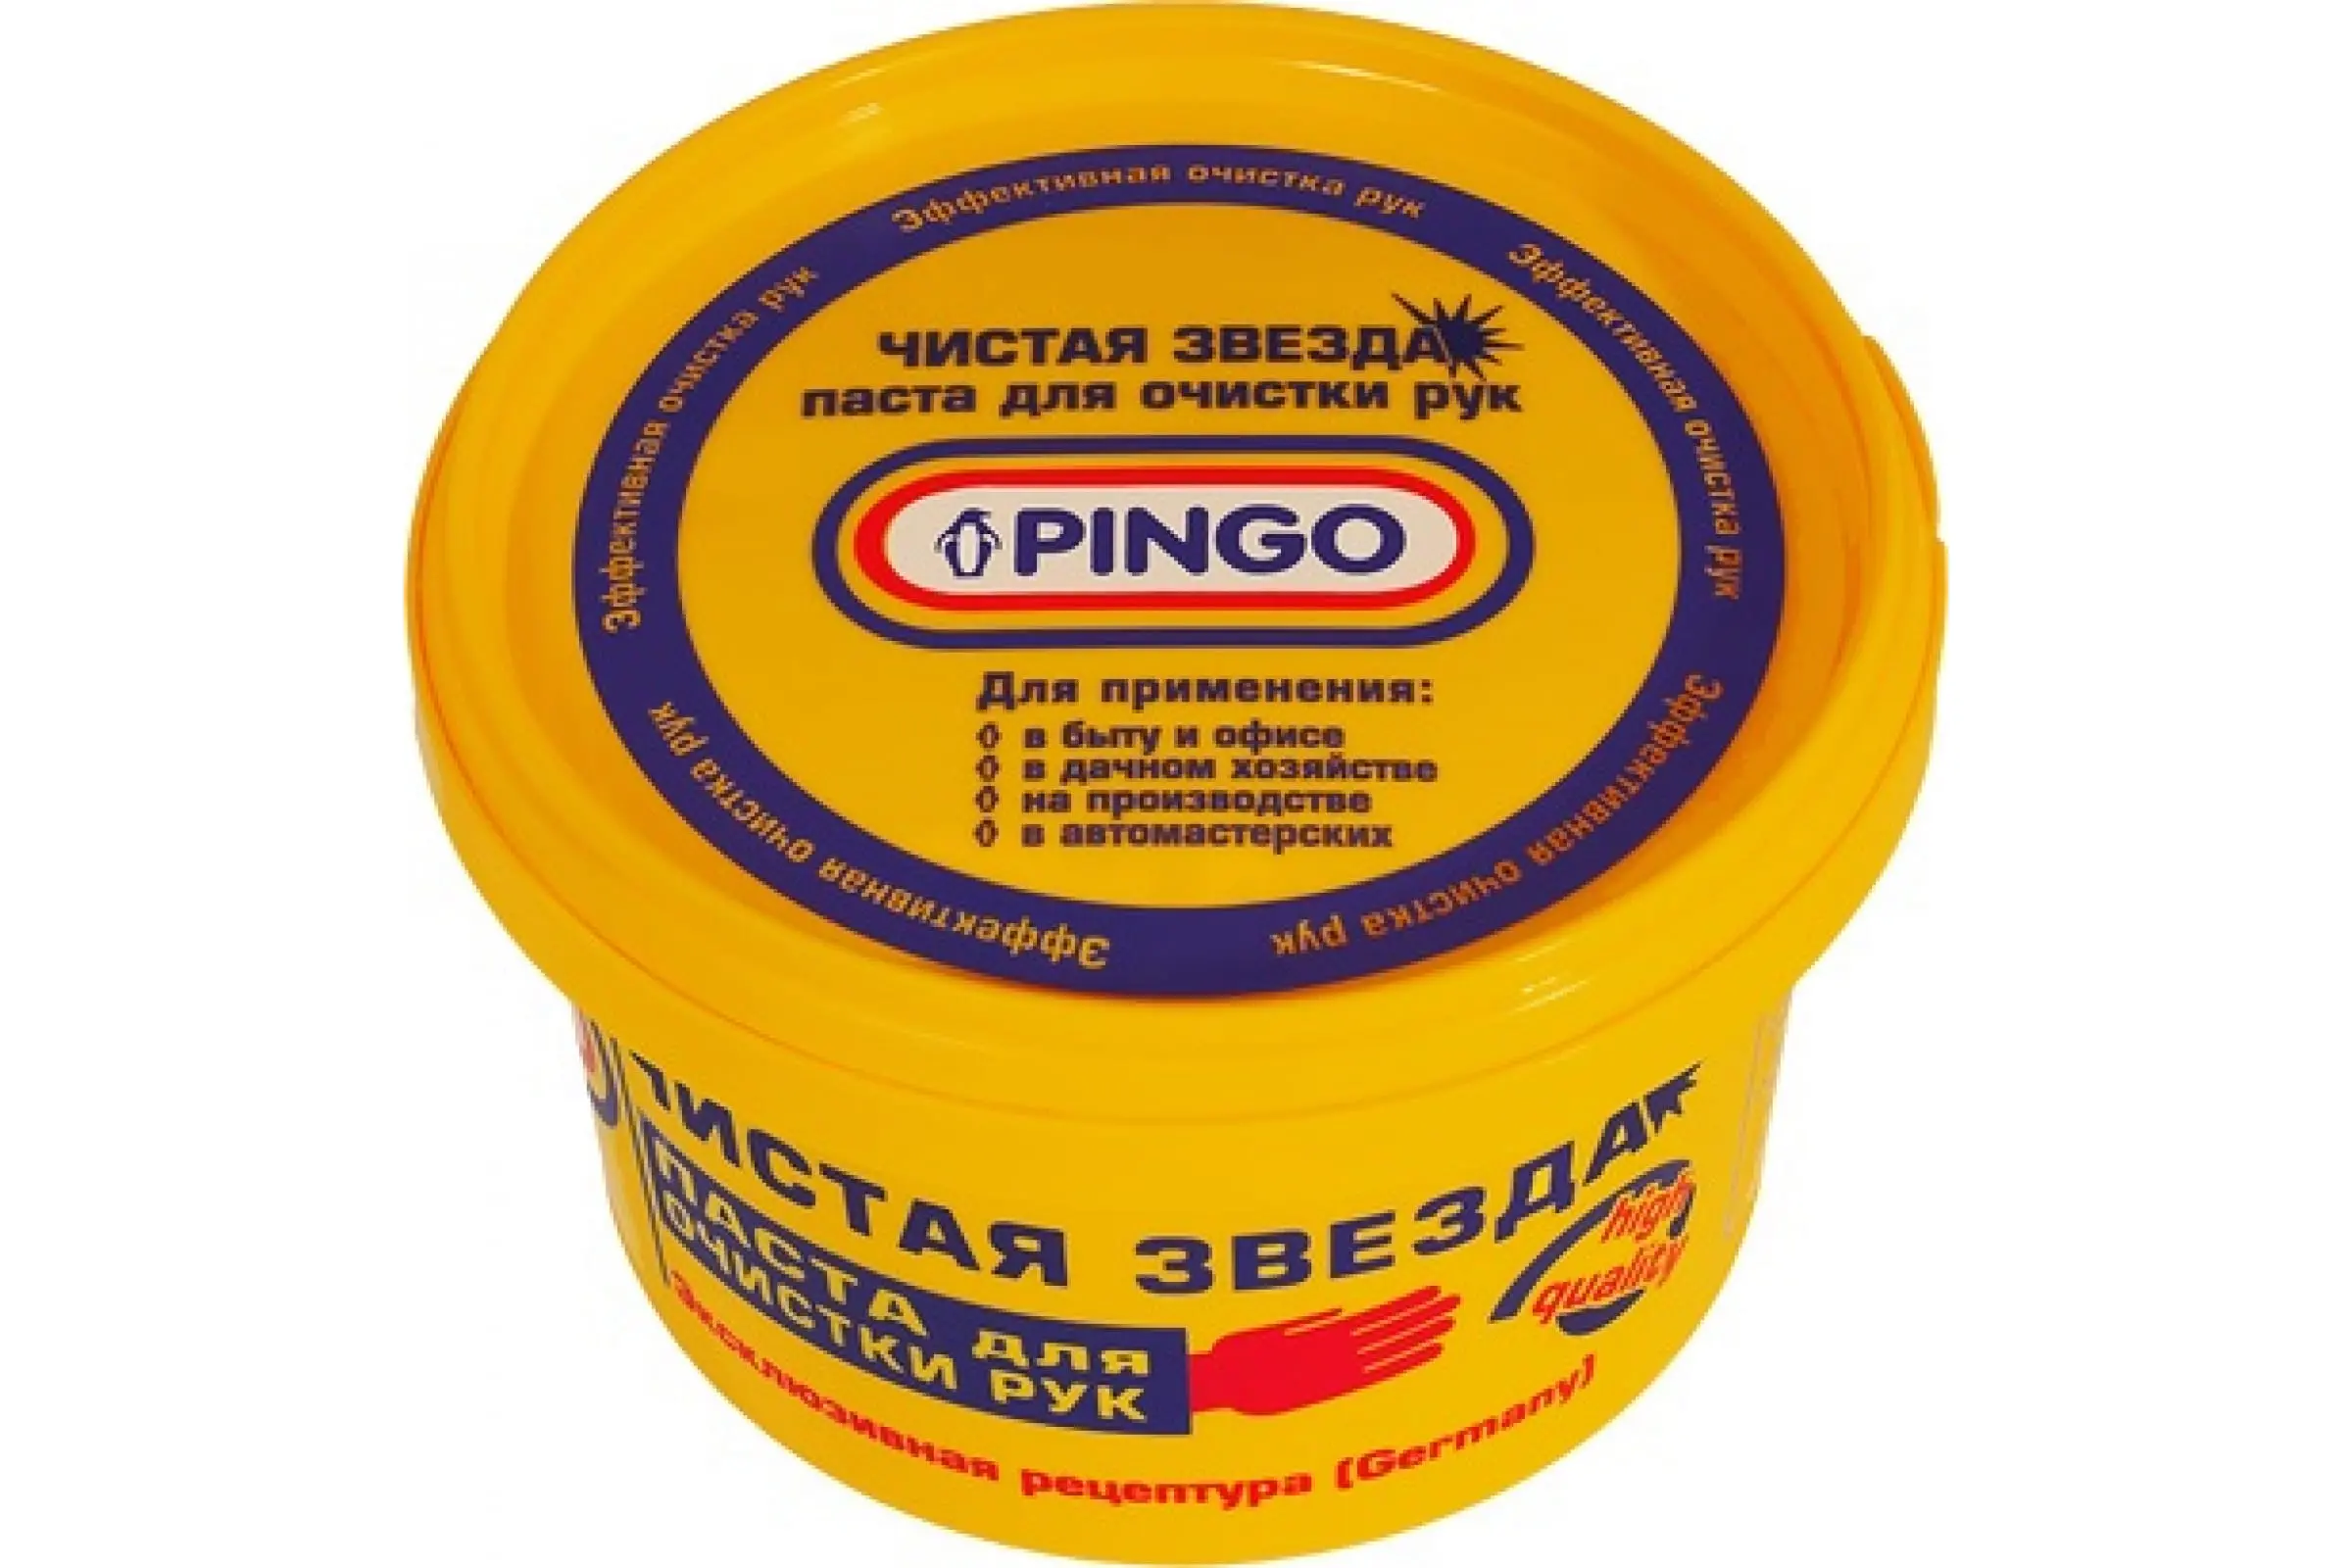 Паста для очистки рук Pingo (Чистая звезда) 650 мл